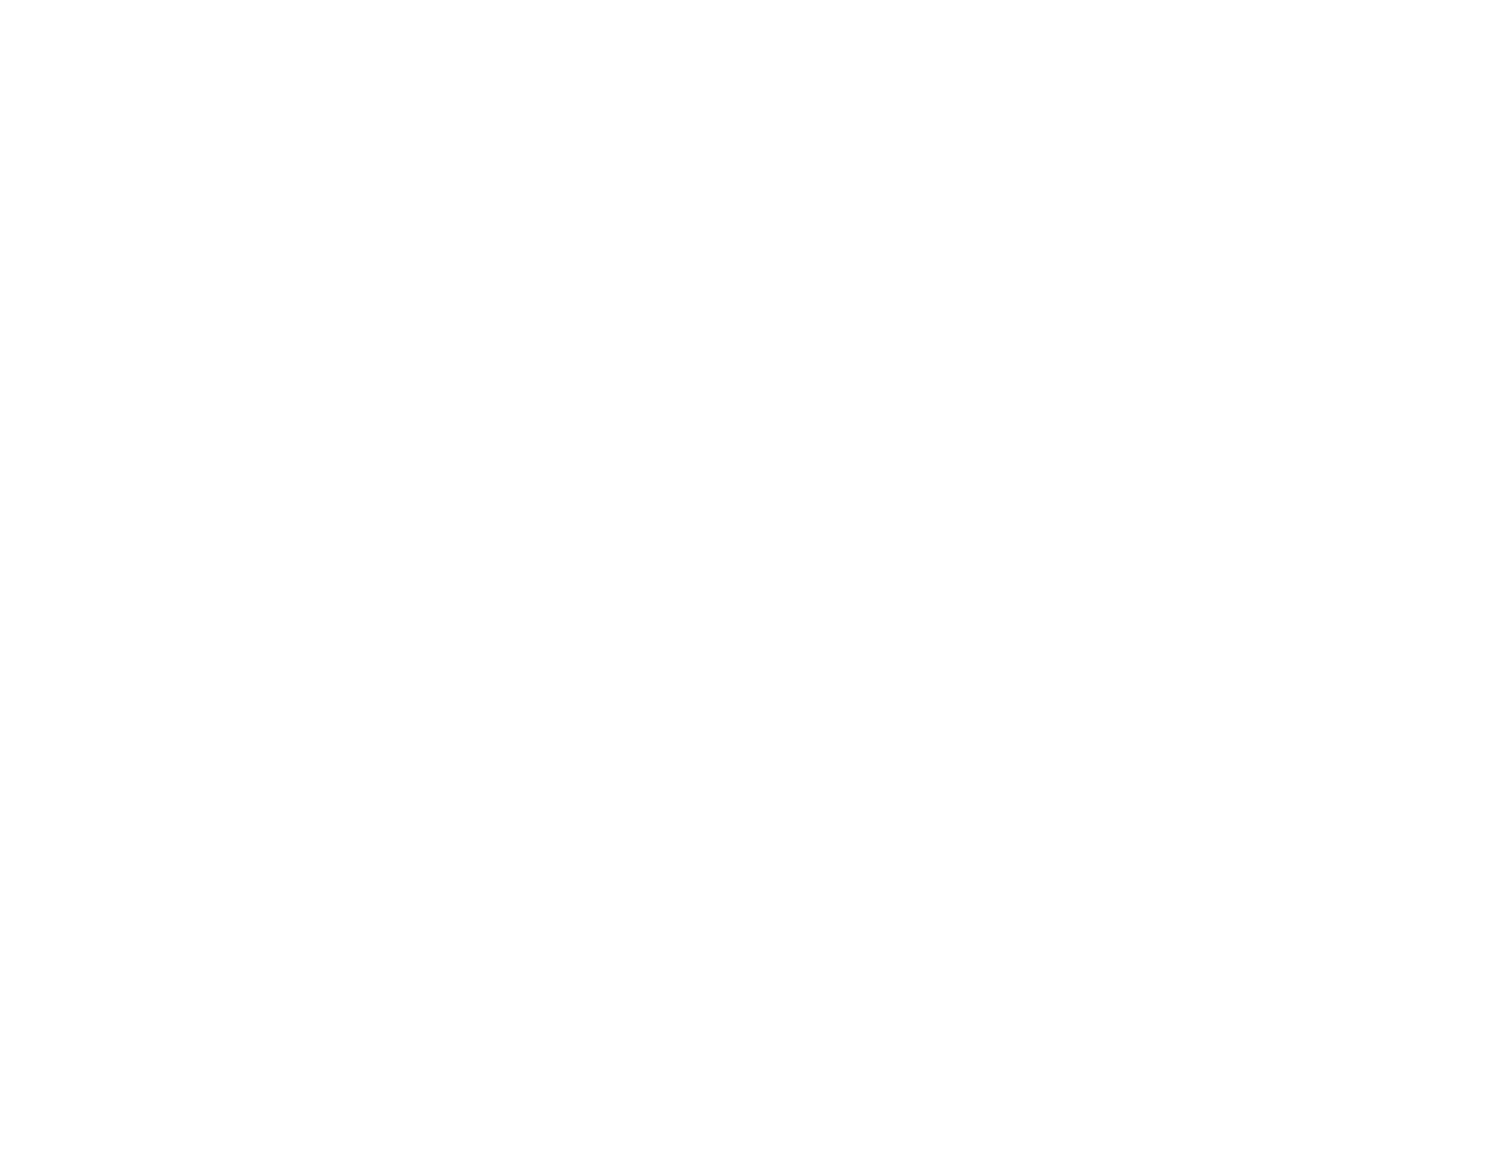 DD AirBags - Airbags para todos los deportes de acción